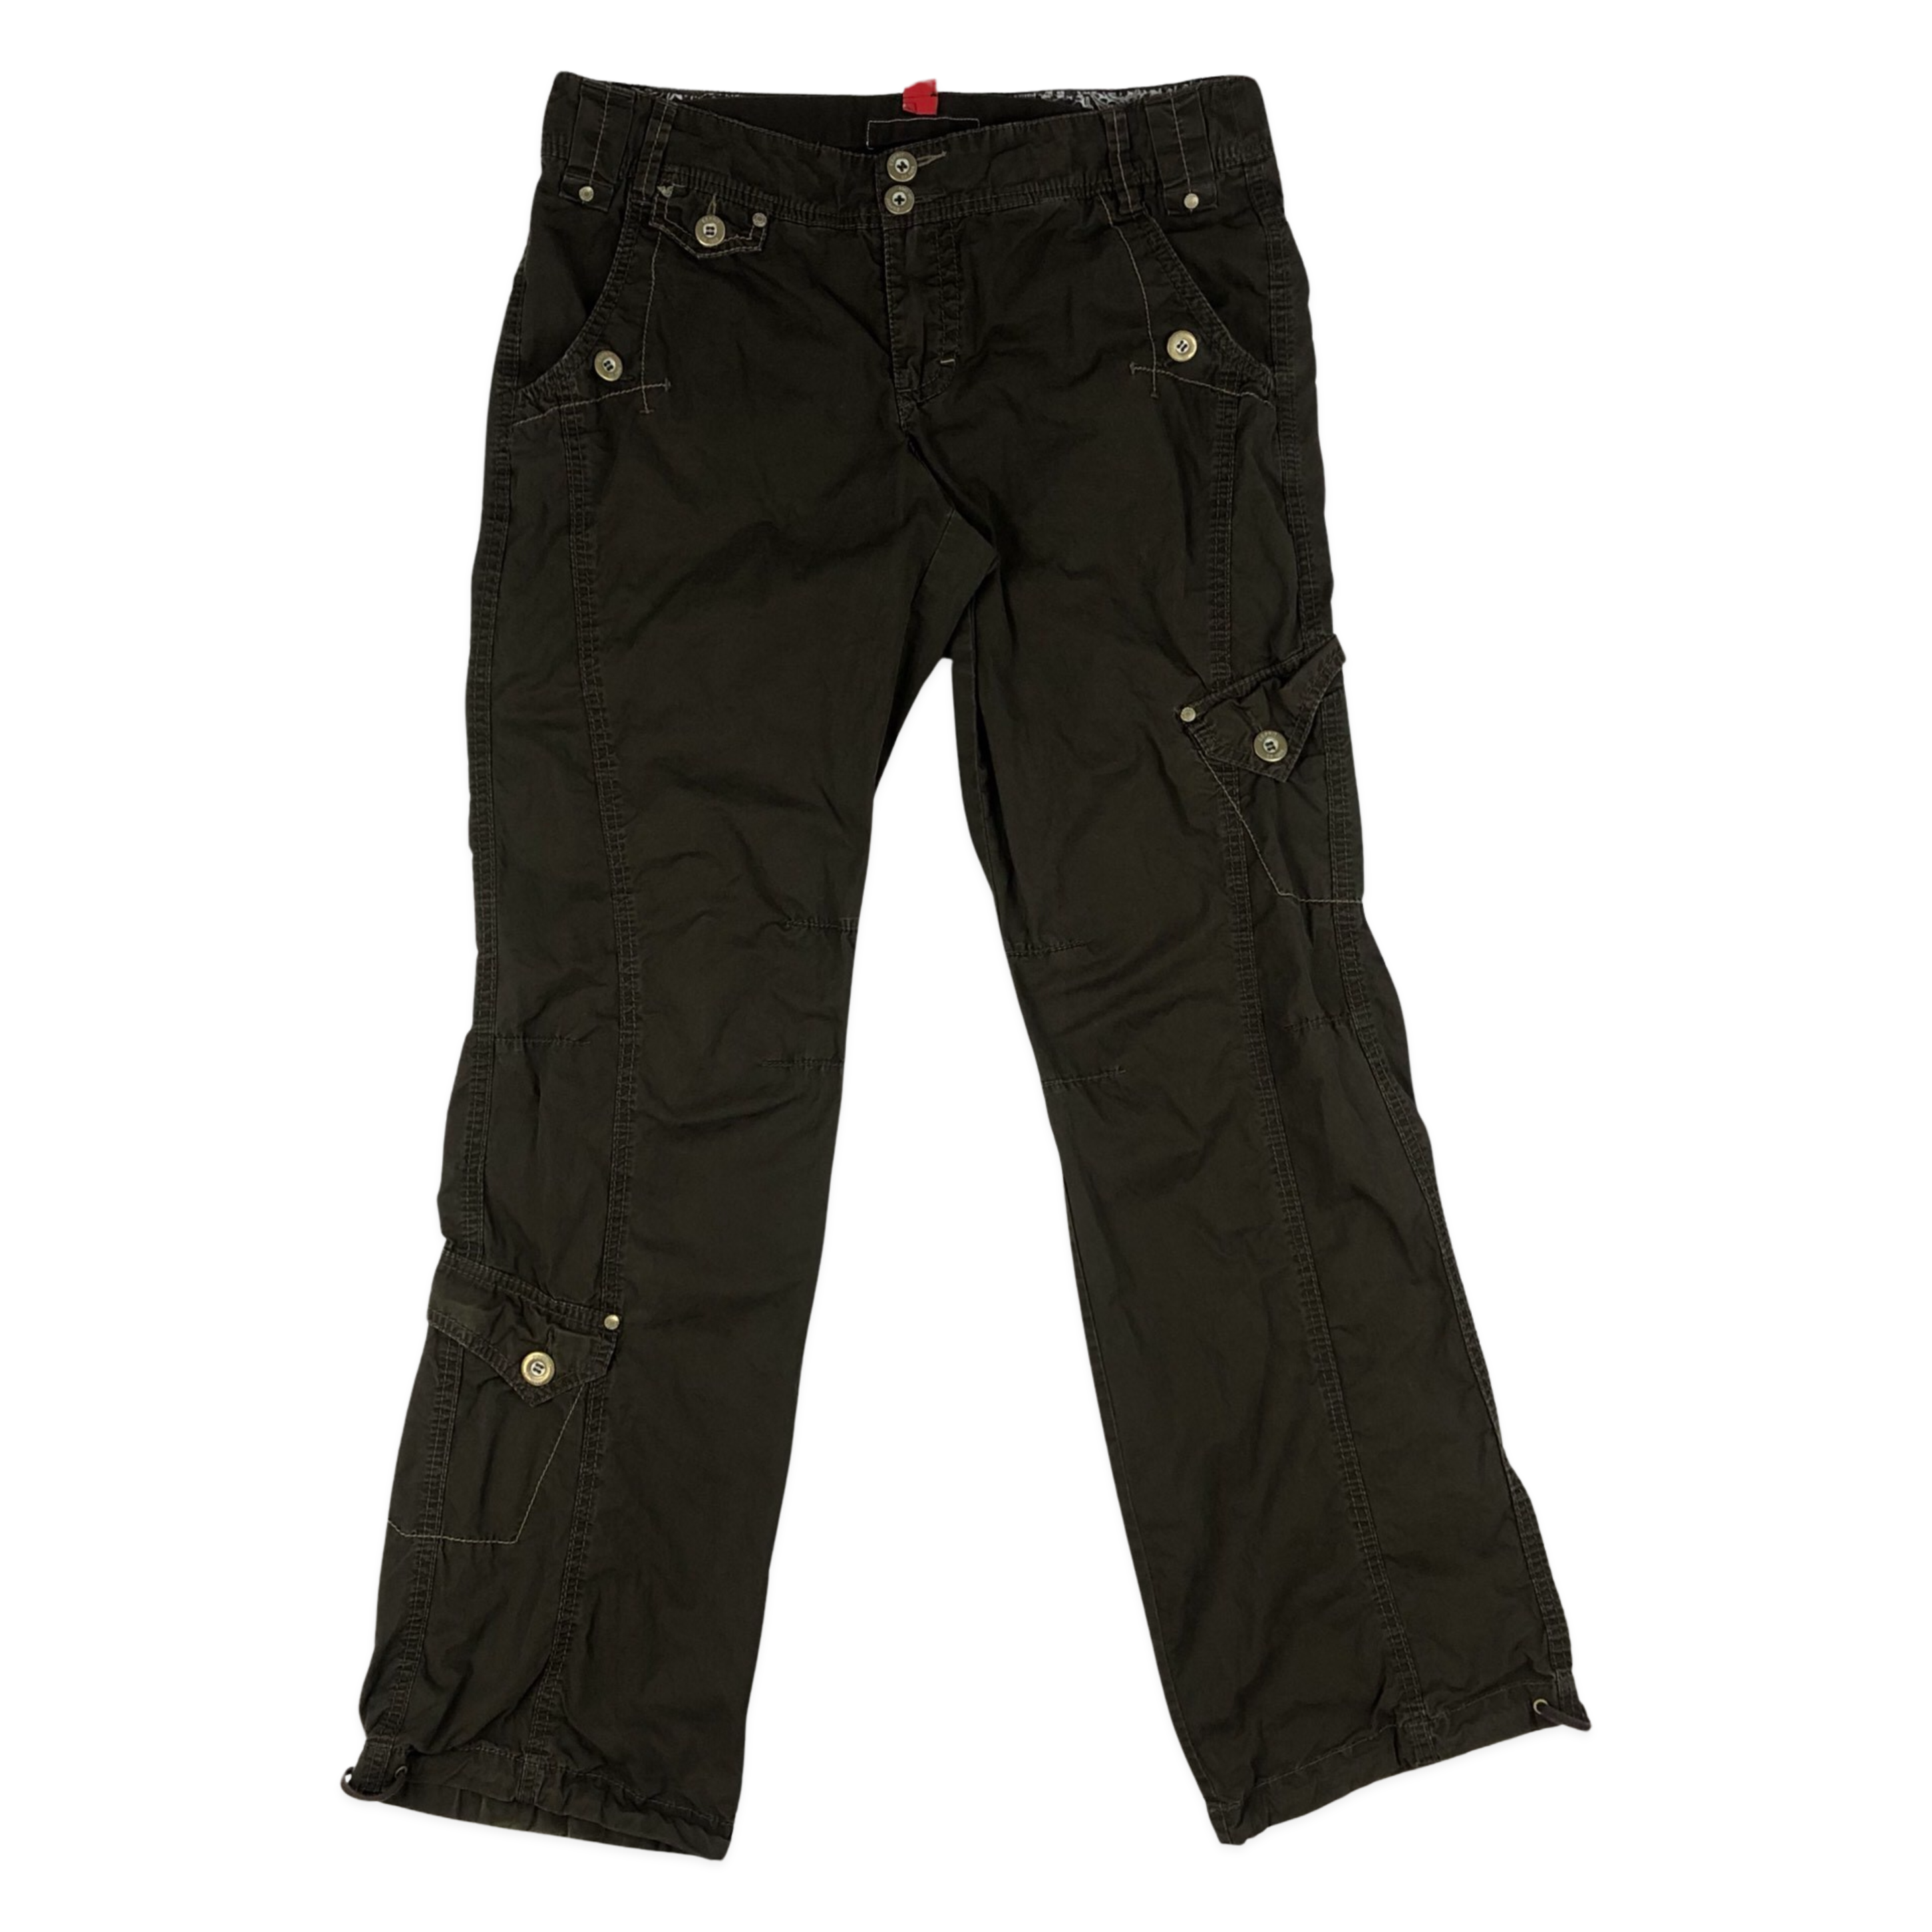 Esprit Cargo trousers - dark khaki/metallic green - Zalando.de